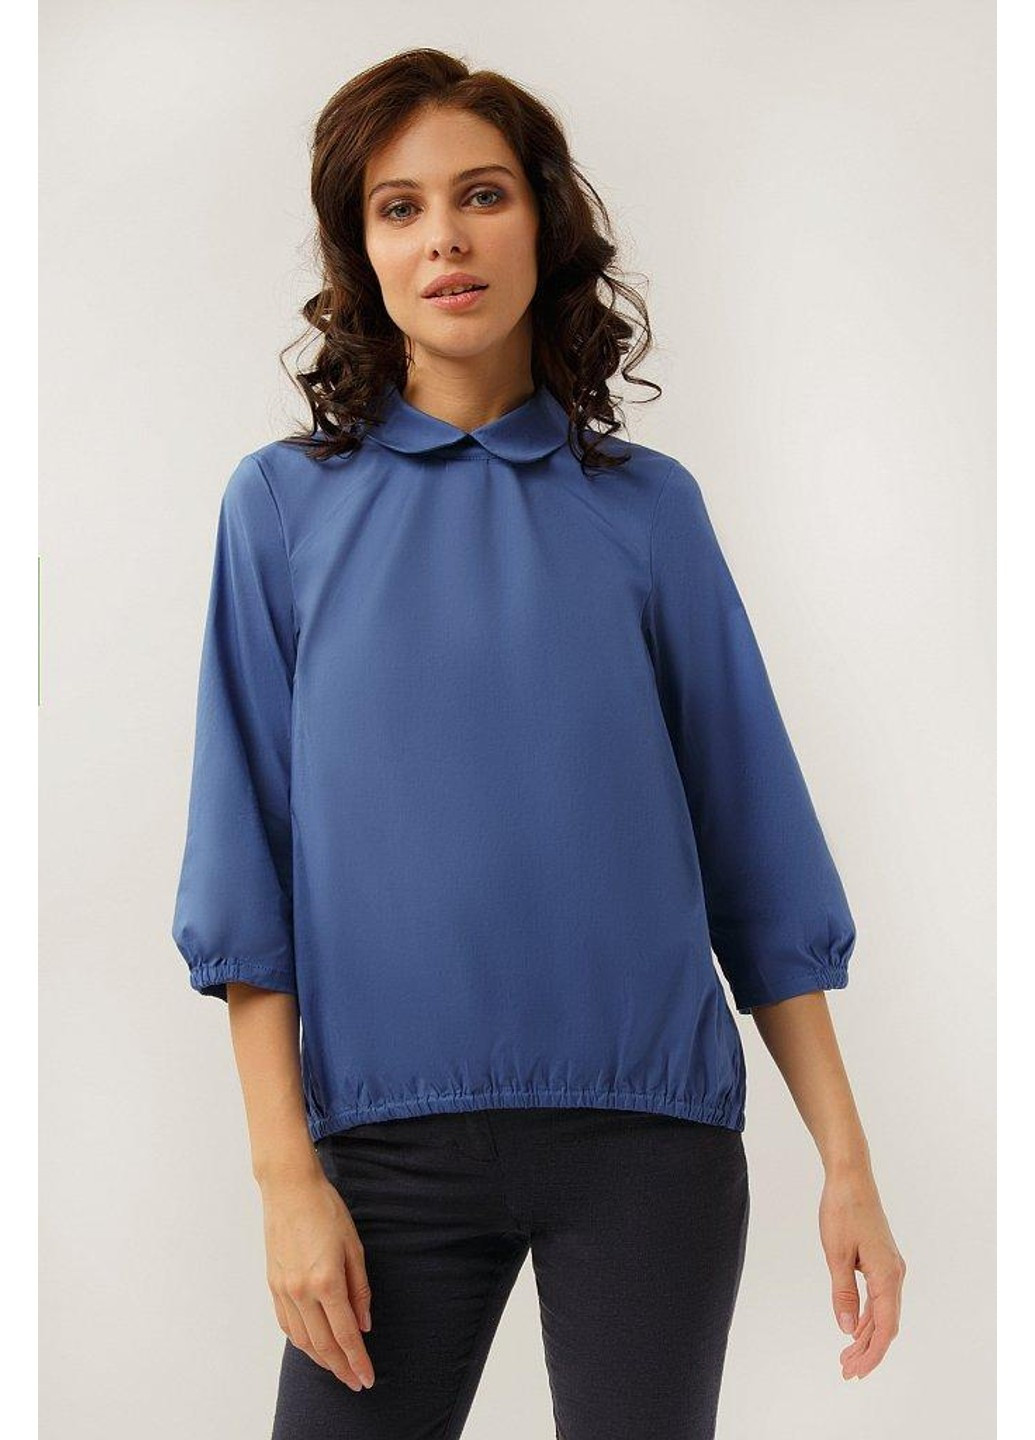 Синяя демисезонная блуза a19-11052-132 Finn Flare